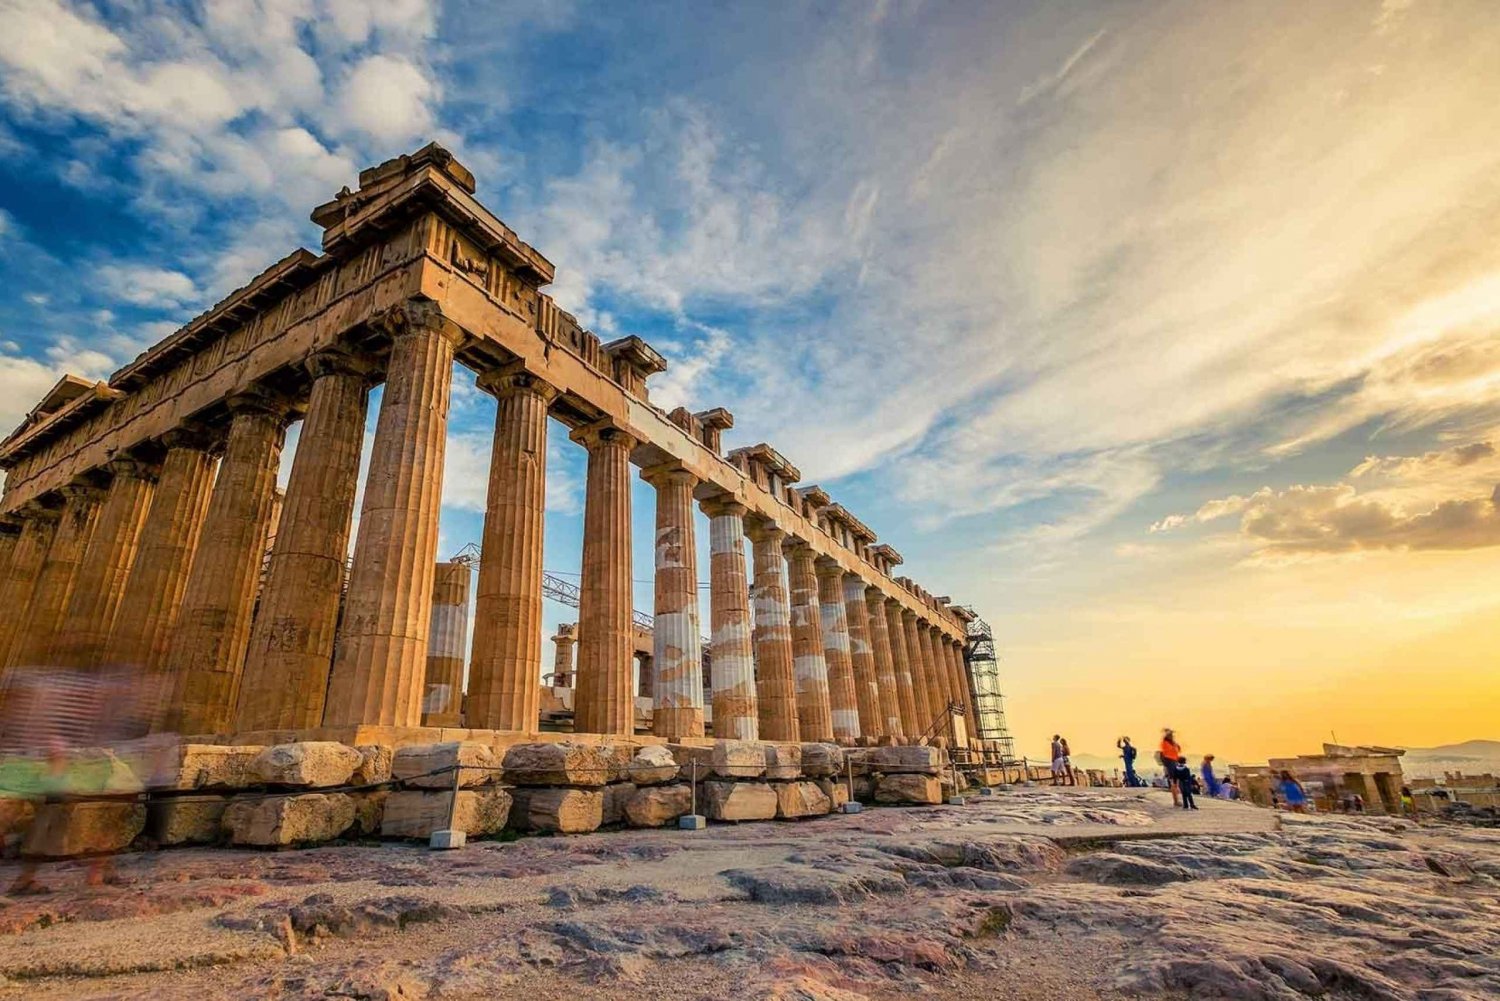 Aten: Sightseeingtur med Skip-the-Line inträde till Akropolis